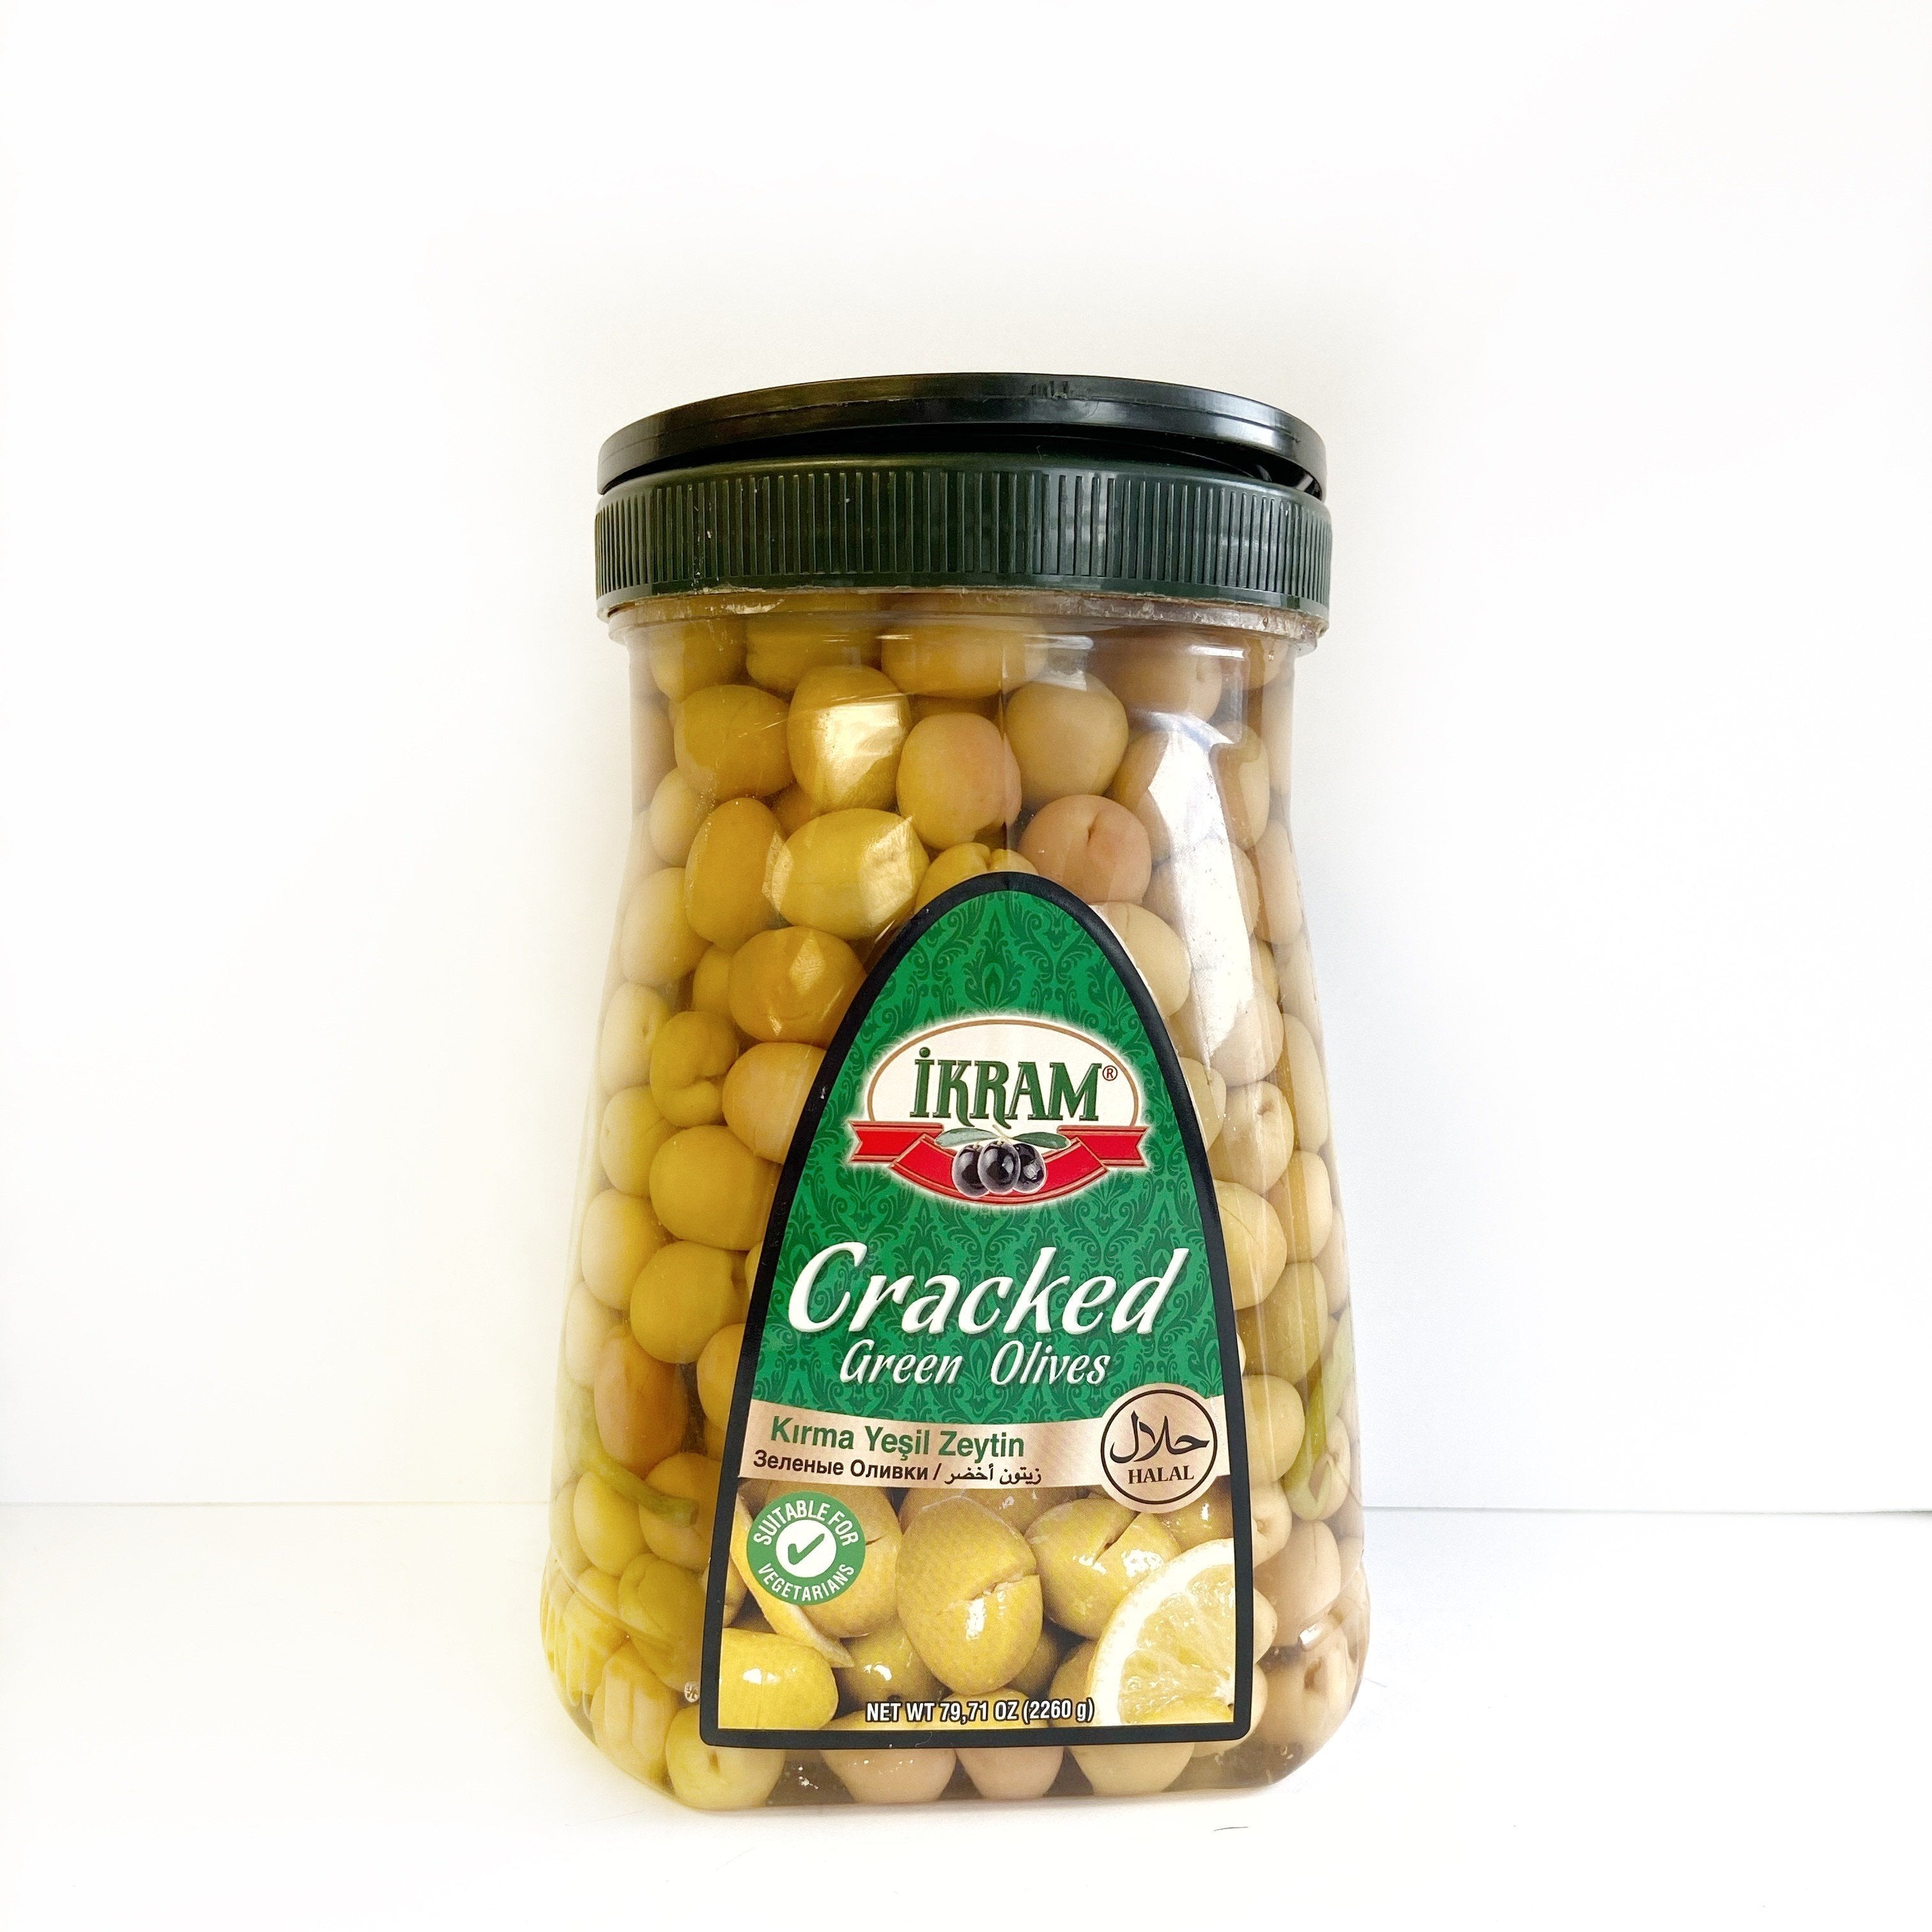 Cracked Green Olives in brine -halal- 2260g net - PET